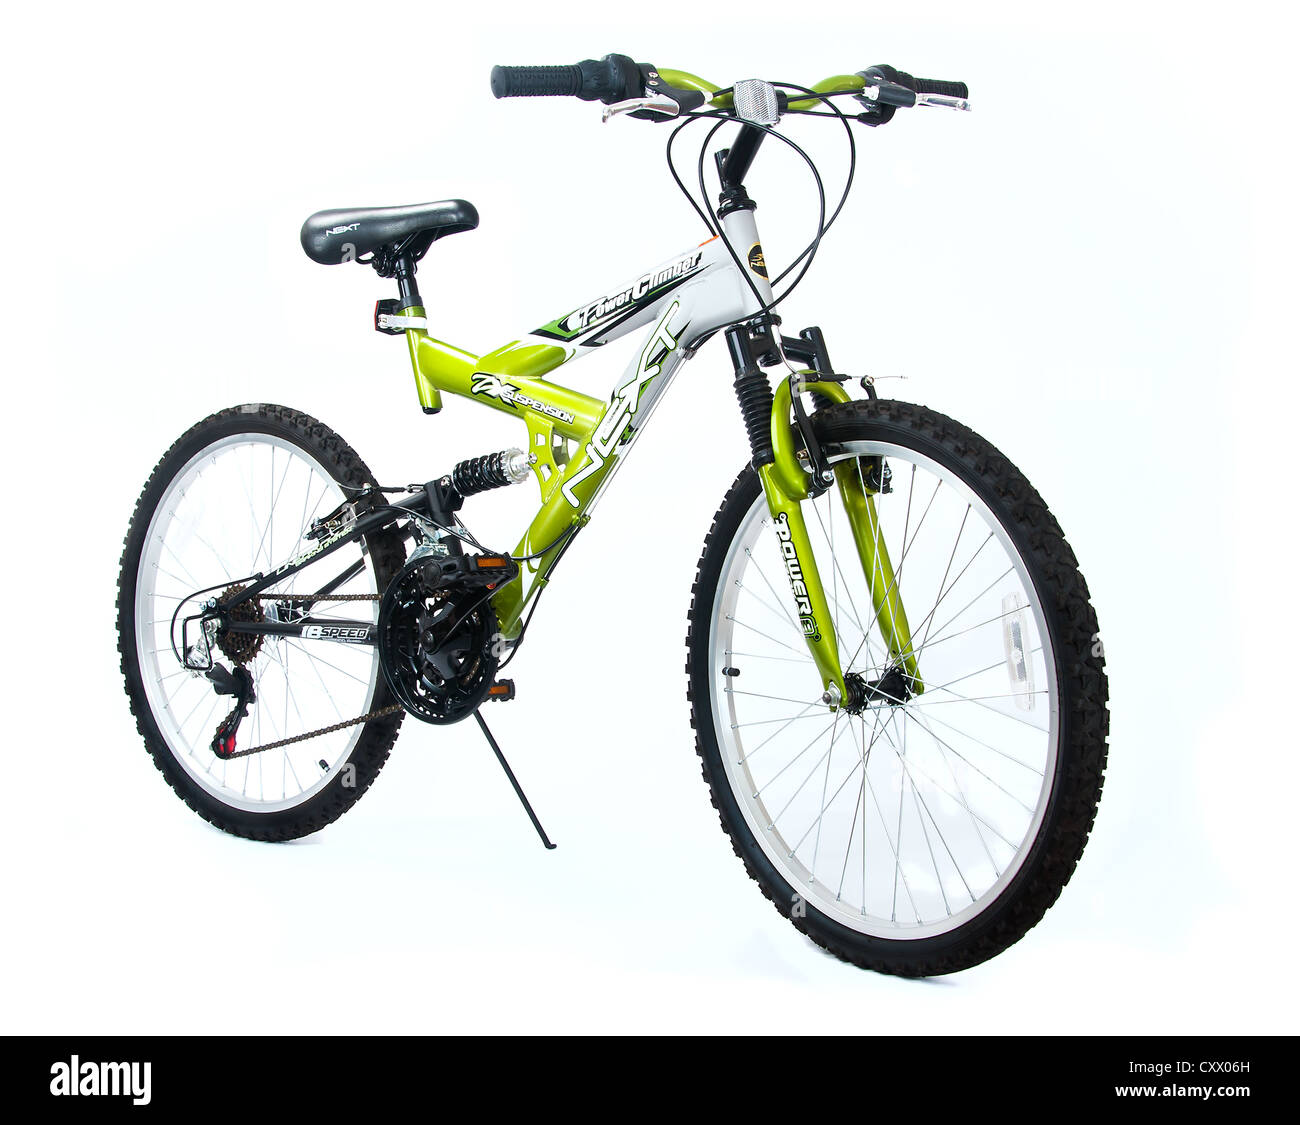 Nouveau vélo avec suspension à ressort Photo Stock - Alamy